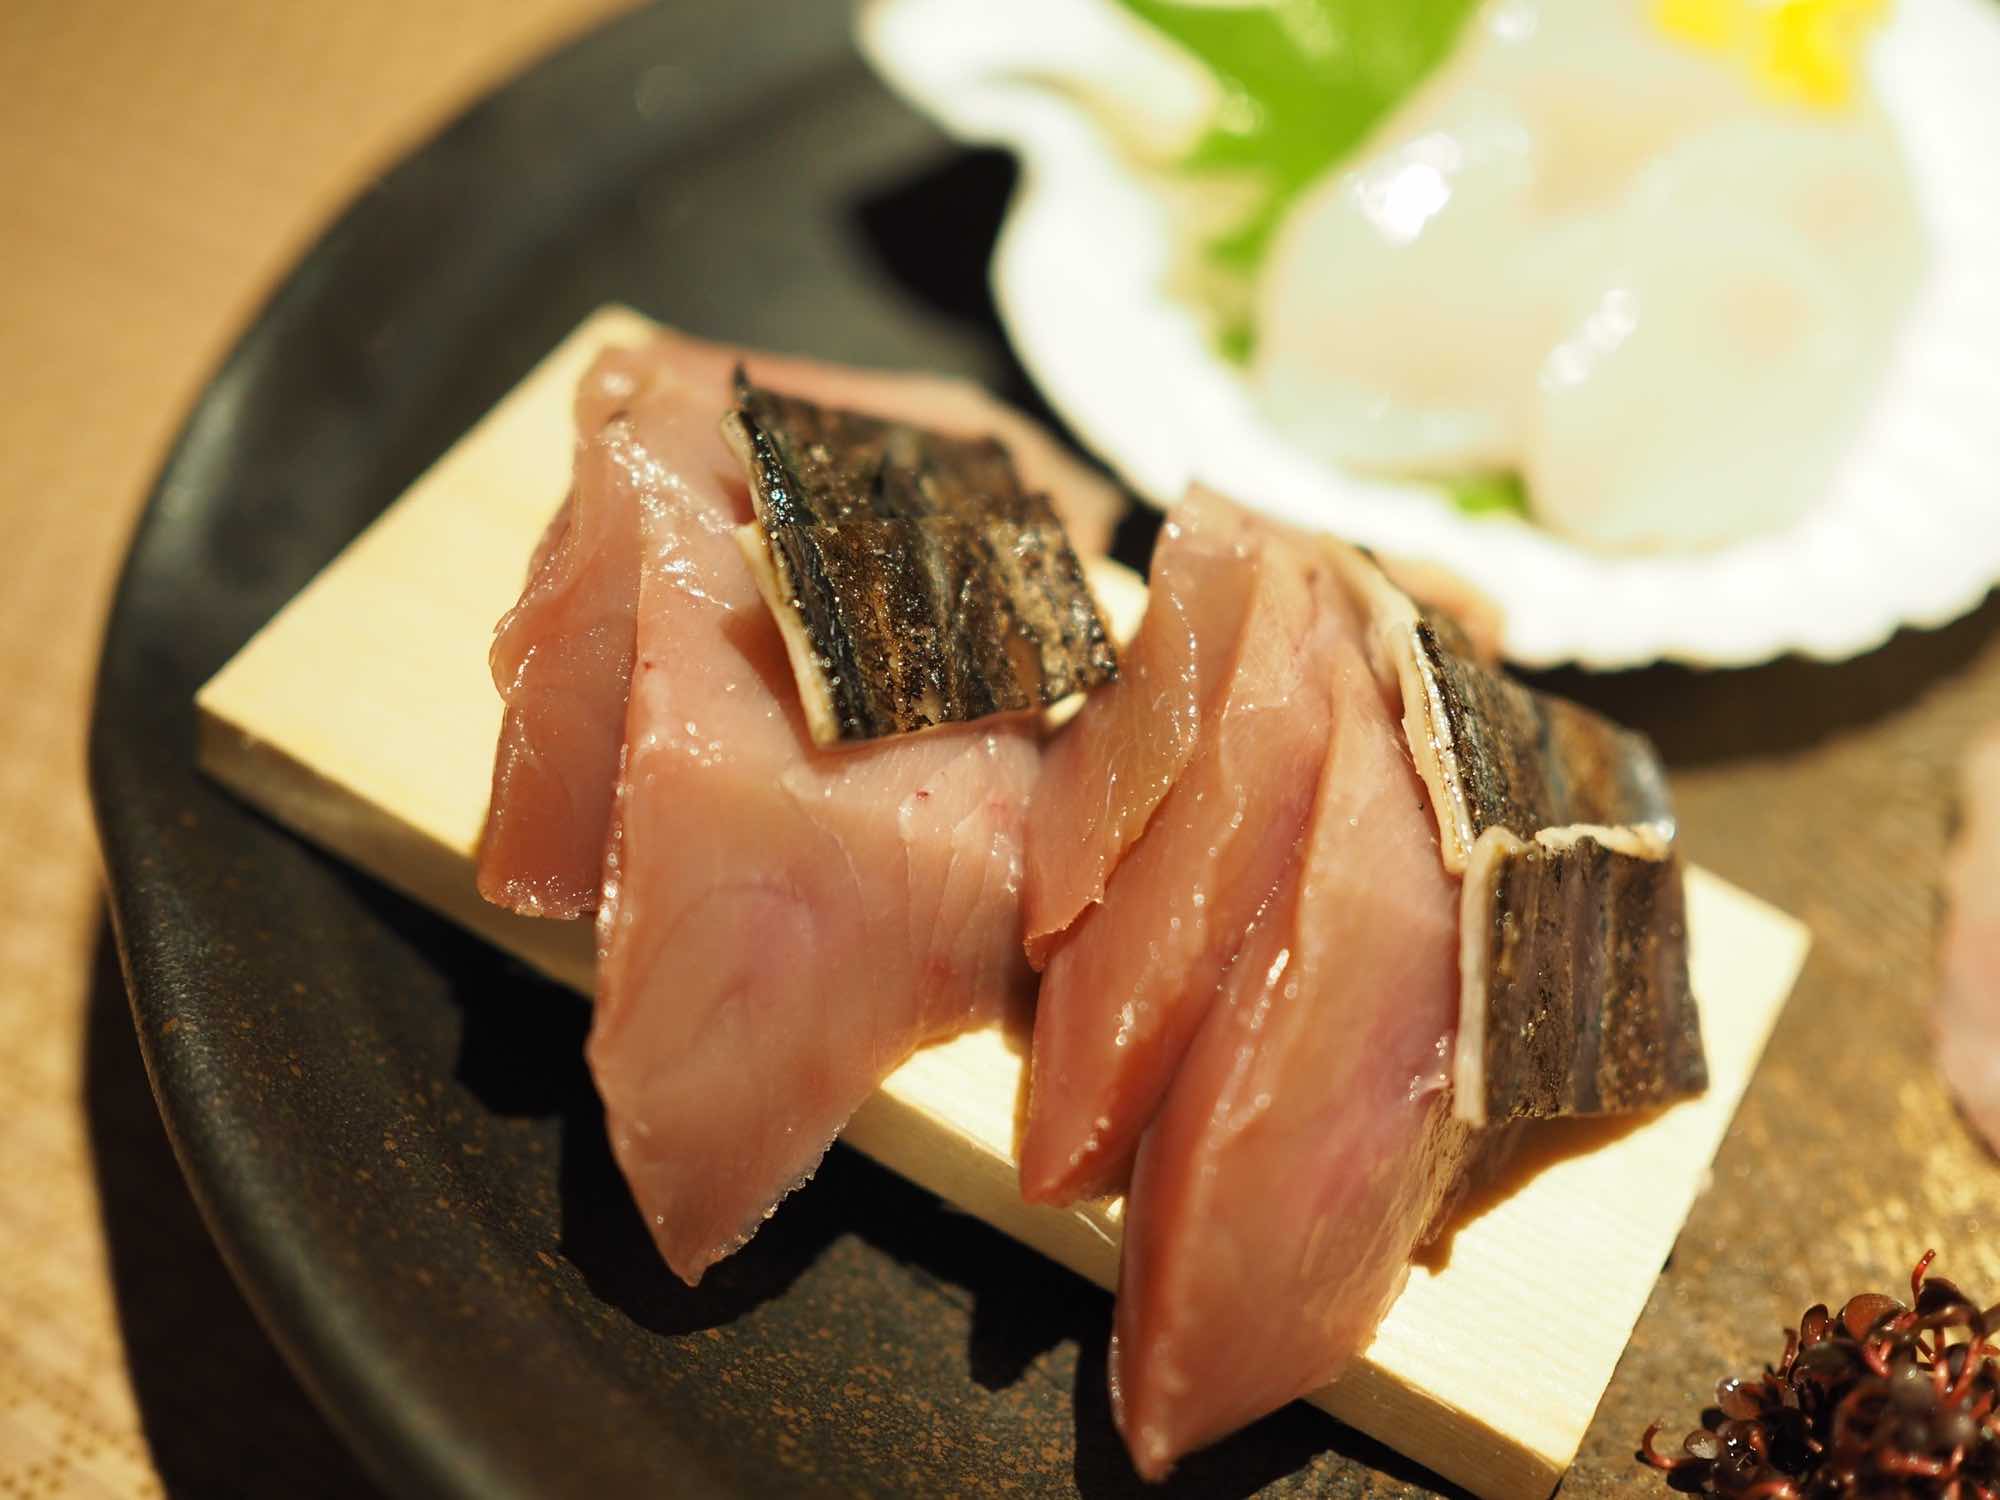 広島の隠れ家的居酒屋きすけ 七七七 で美味しいお刺身を食べる Kinukog